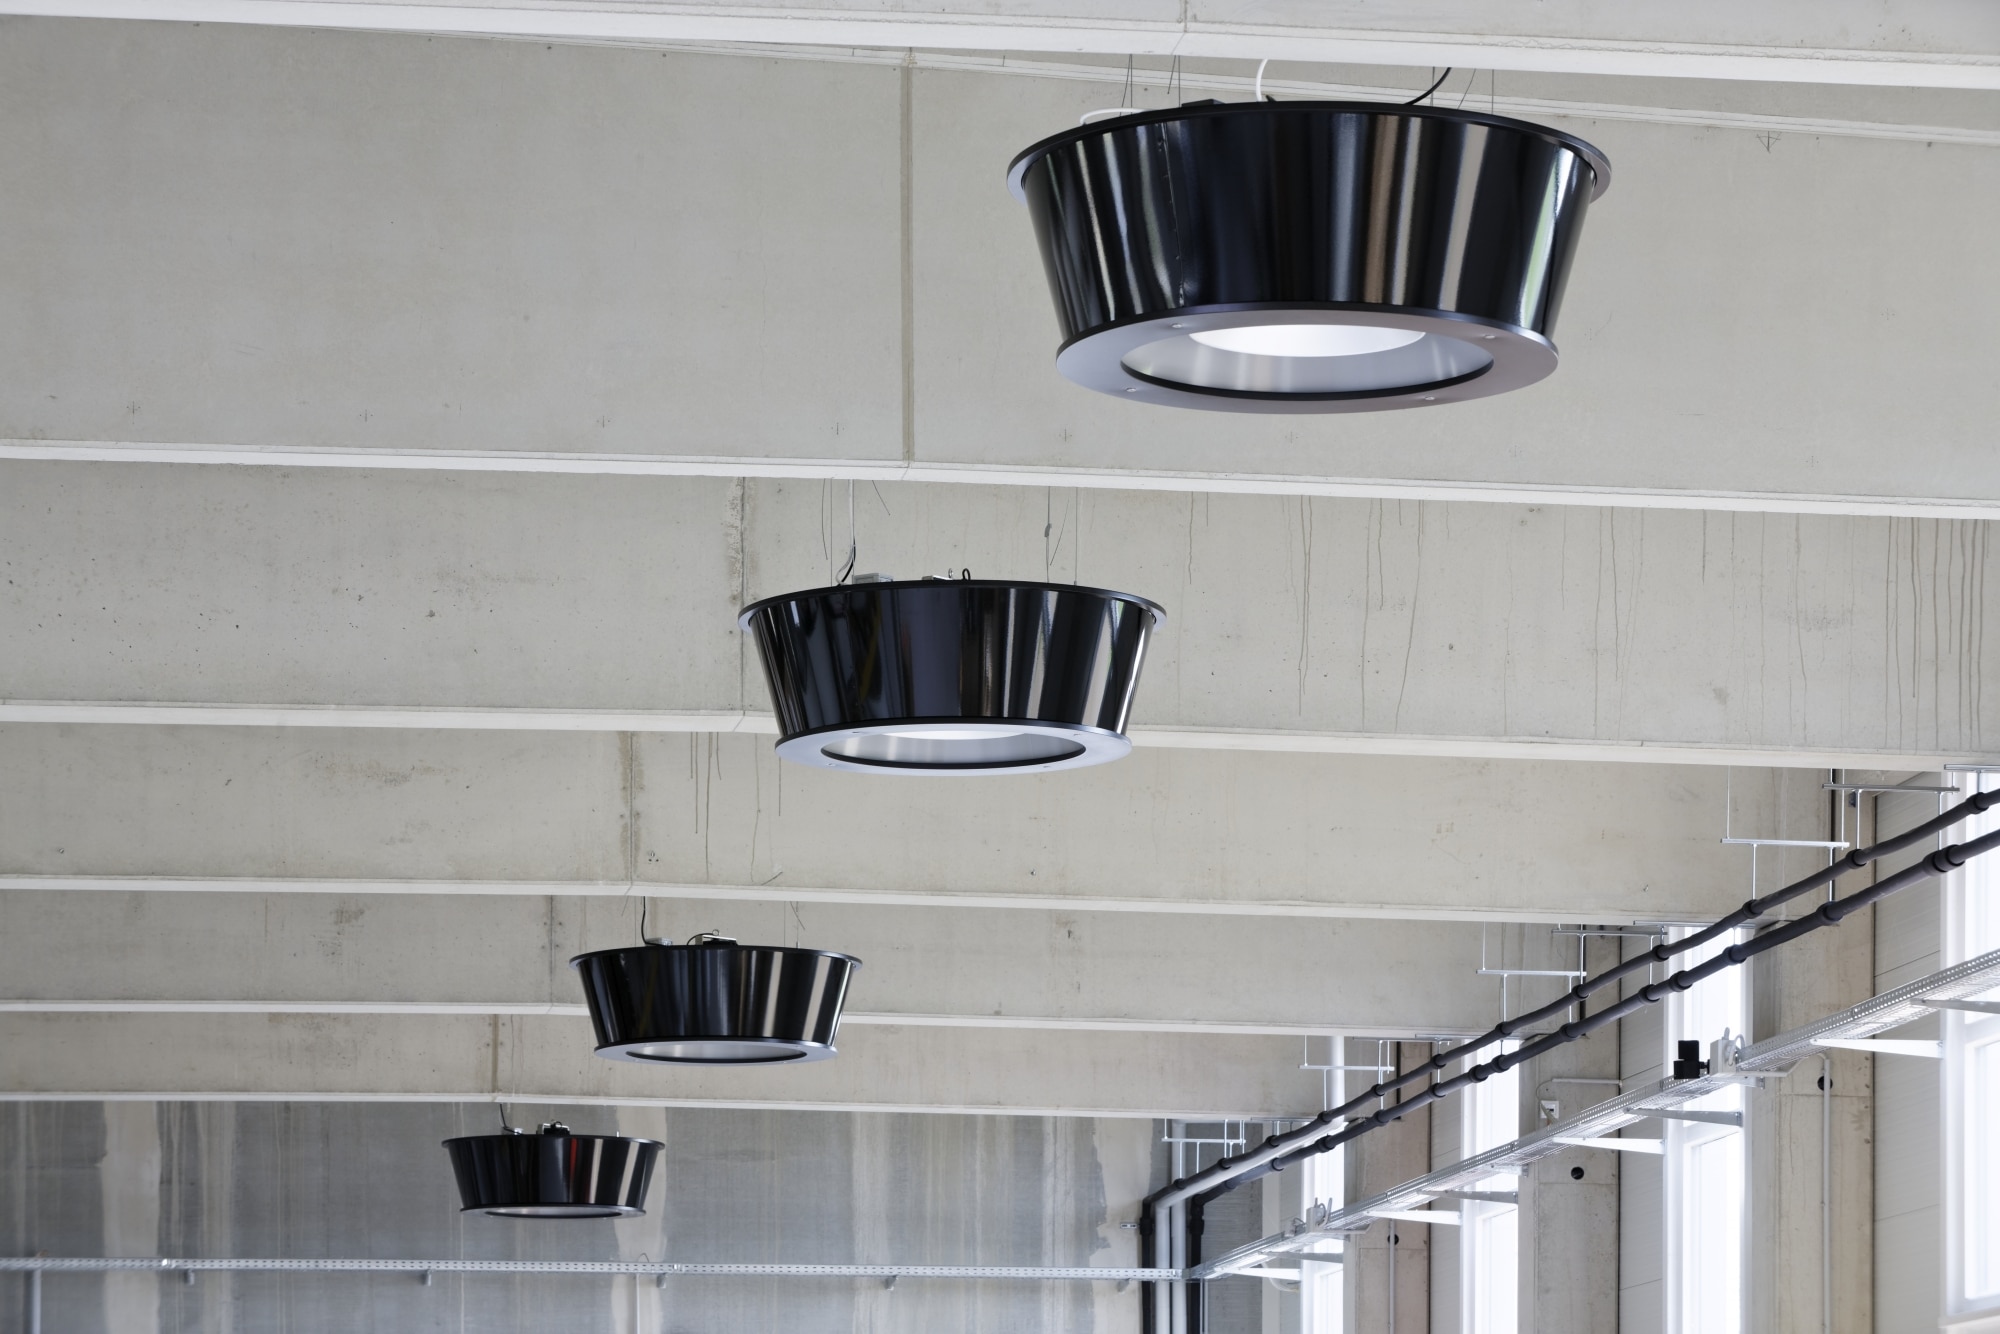 Chauffage infrarouge plafond avec éclairage LED - 370 W